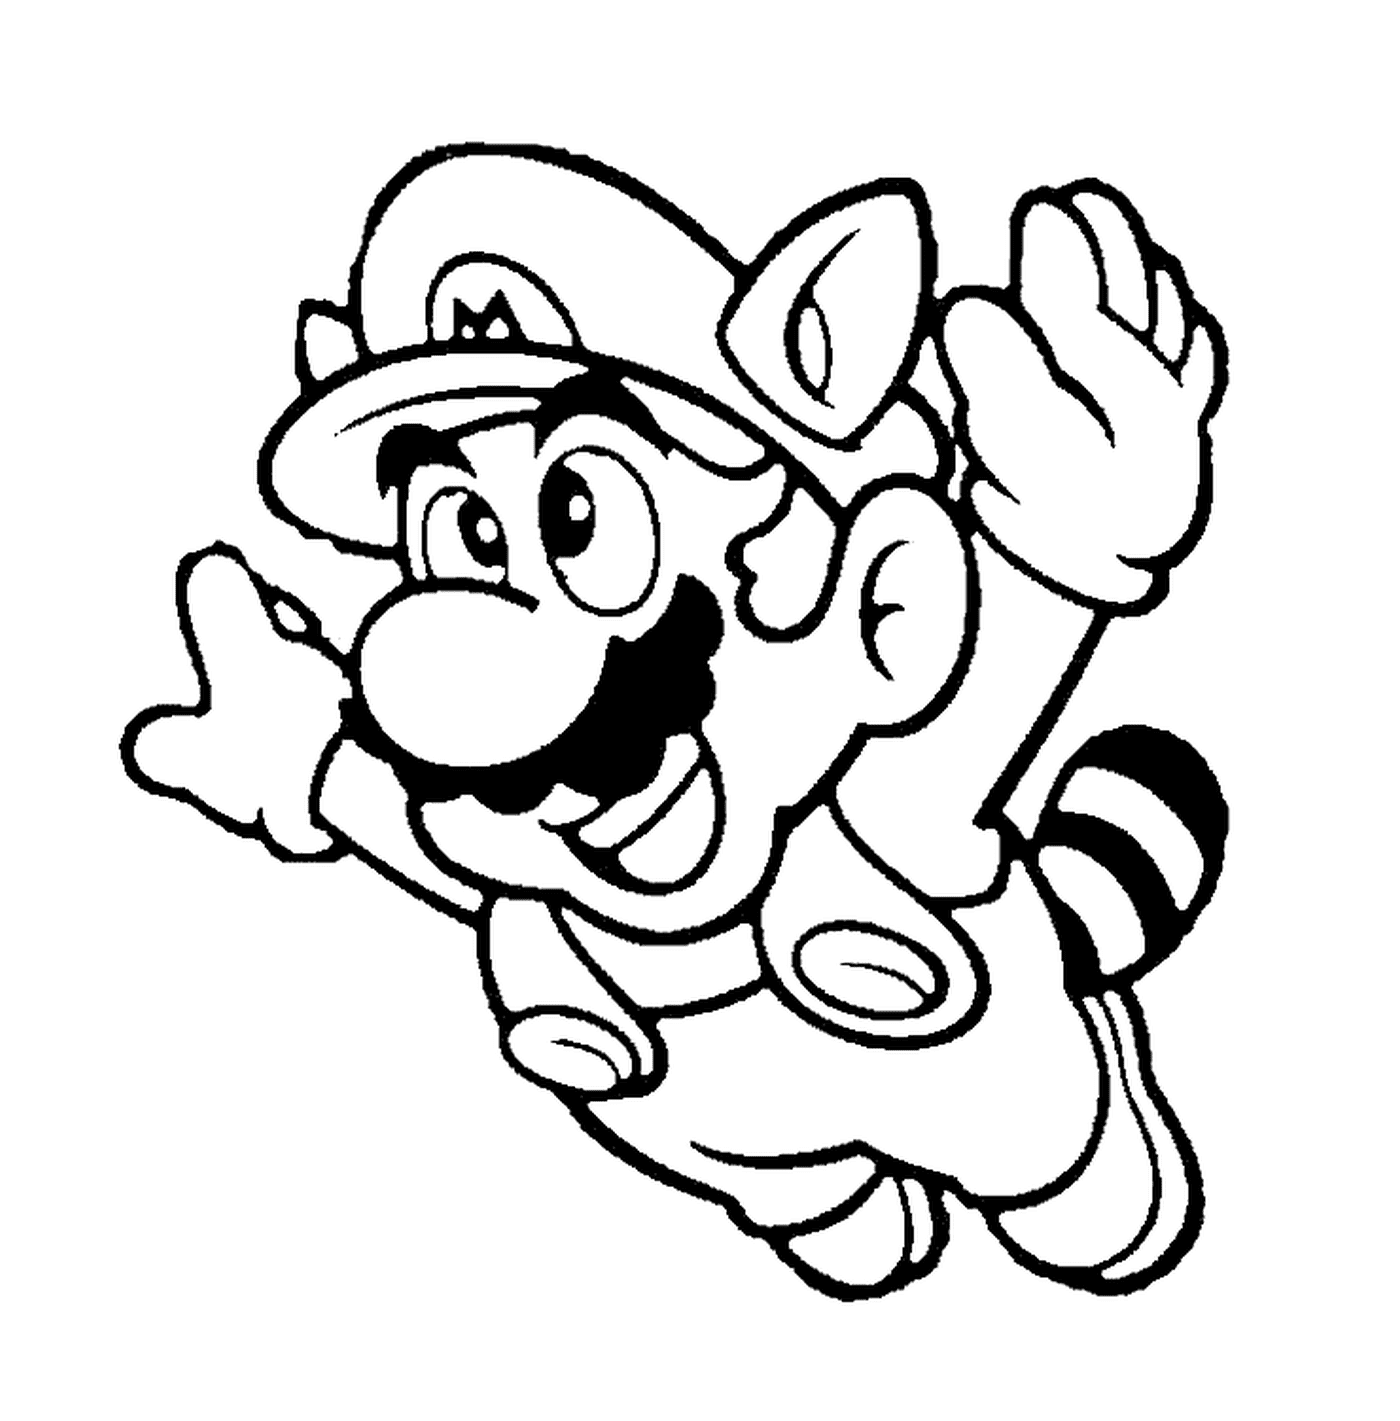 coloriez Mario en raton laveur